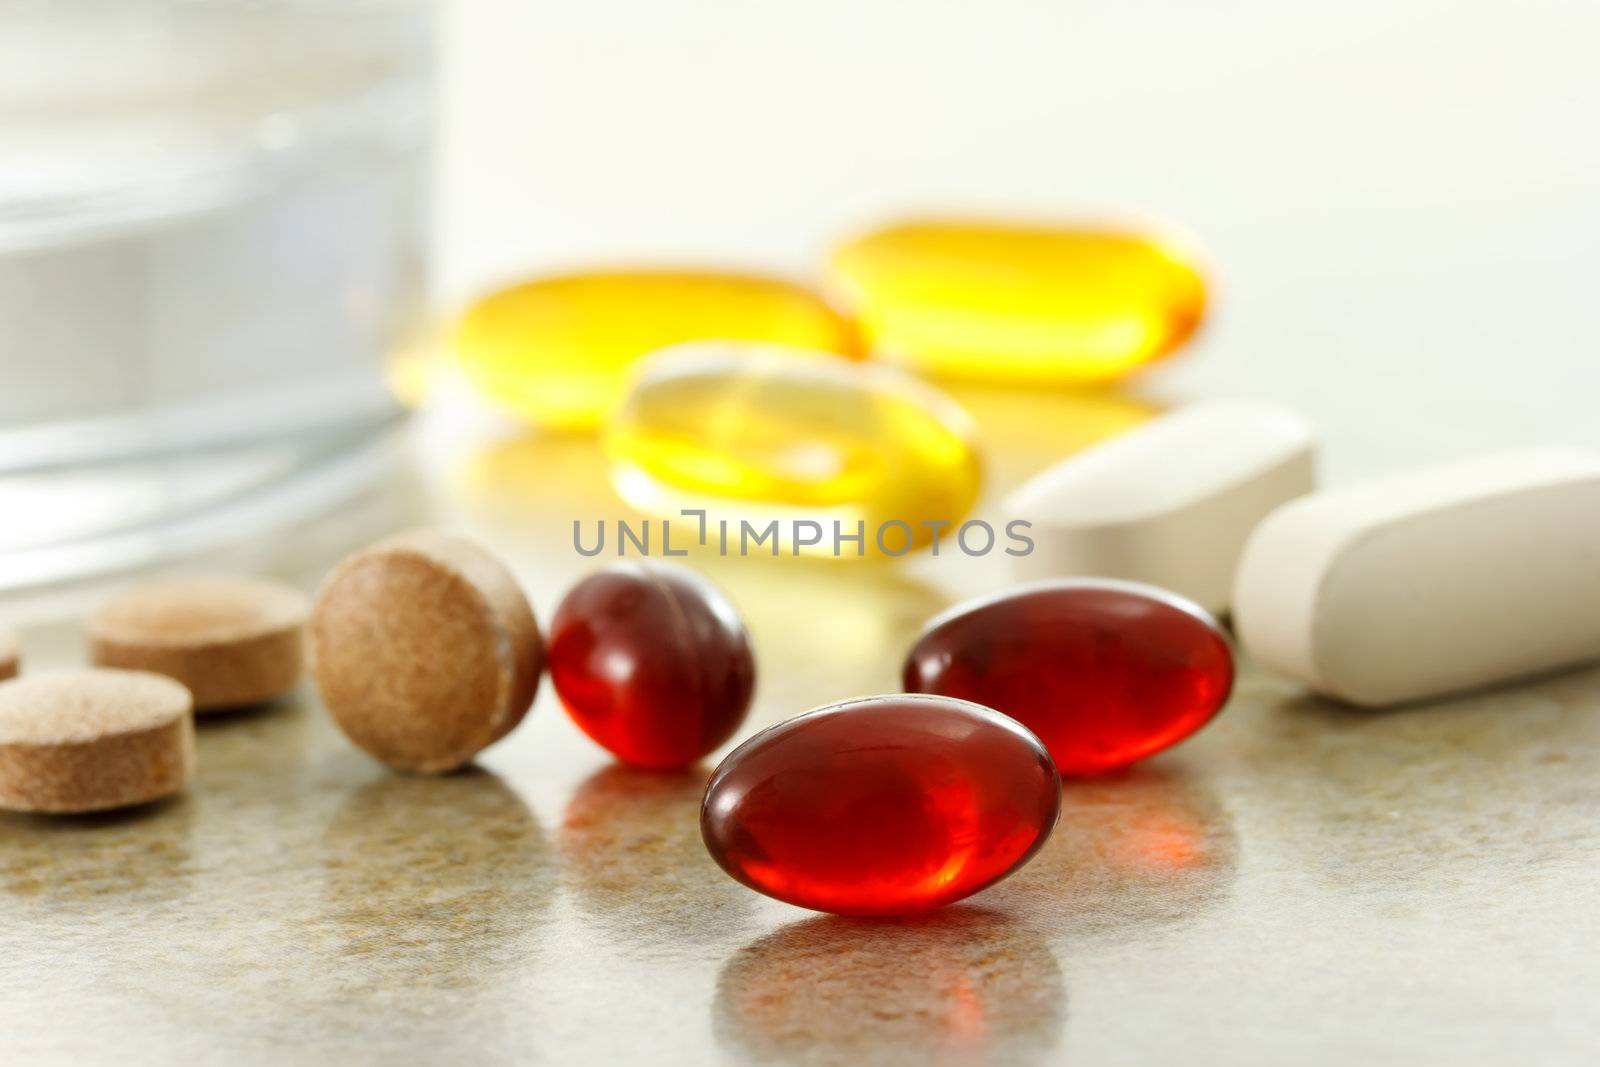 Supplement capsules by melpomene